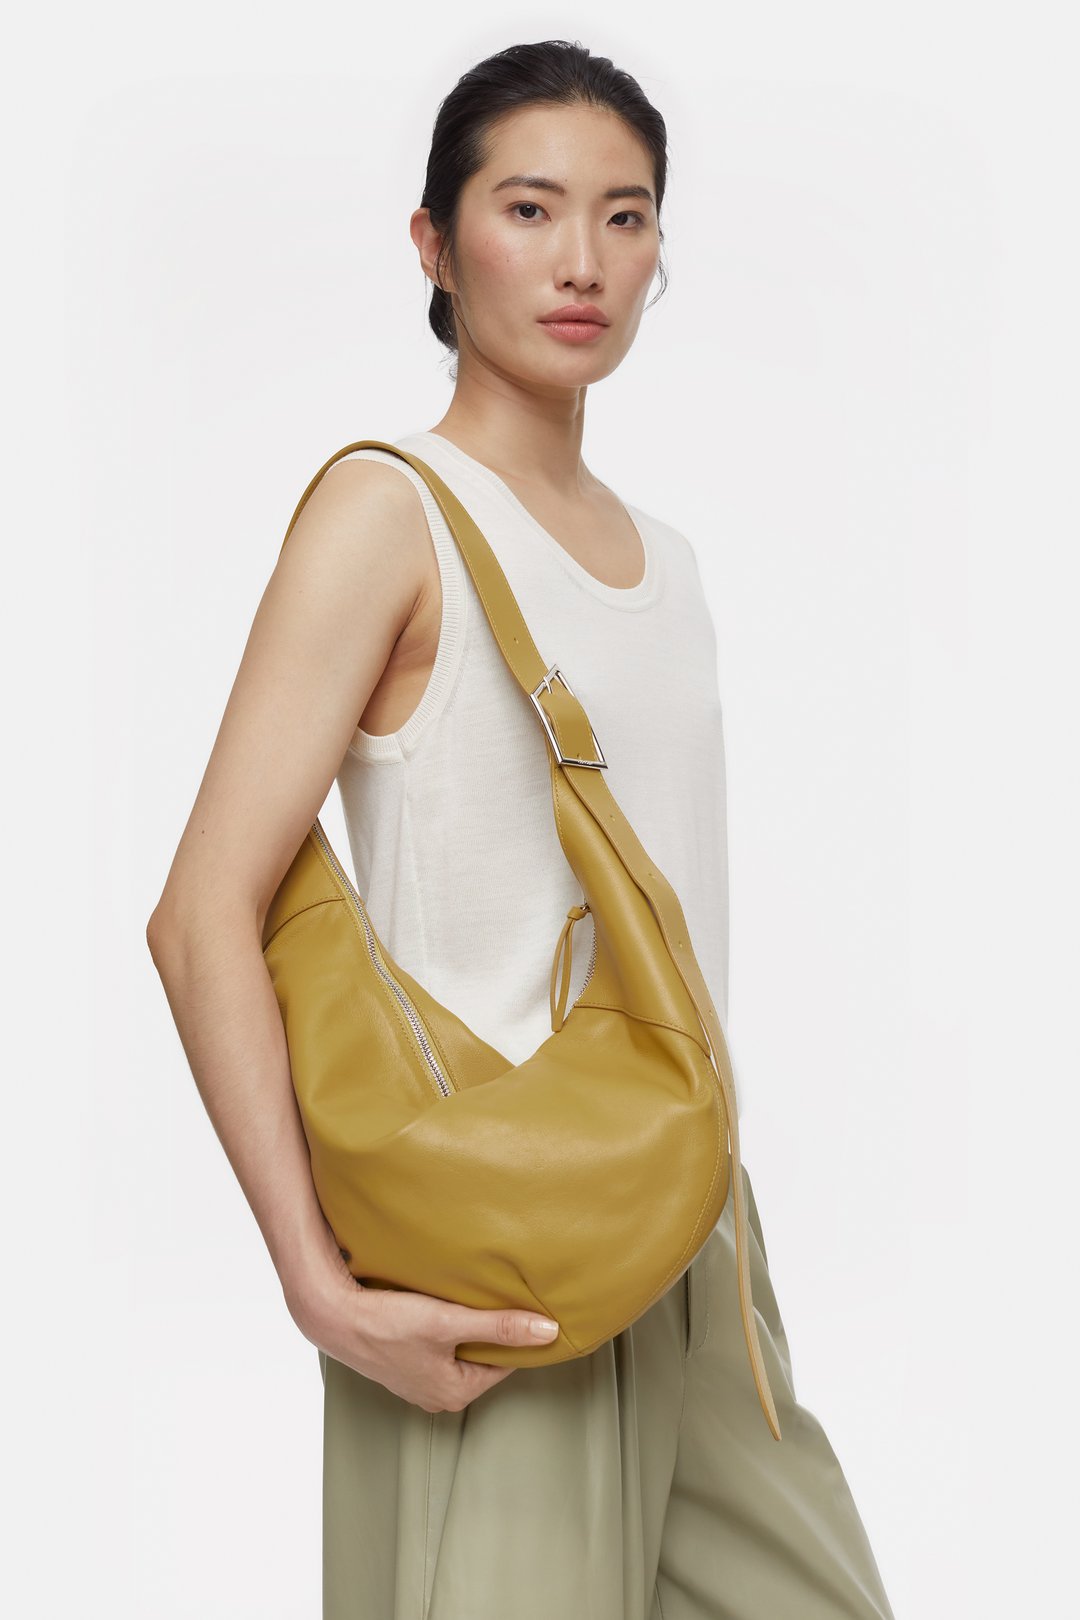 Comanche Moon Bag (12”x14”) – Espuela Design Co.